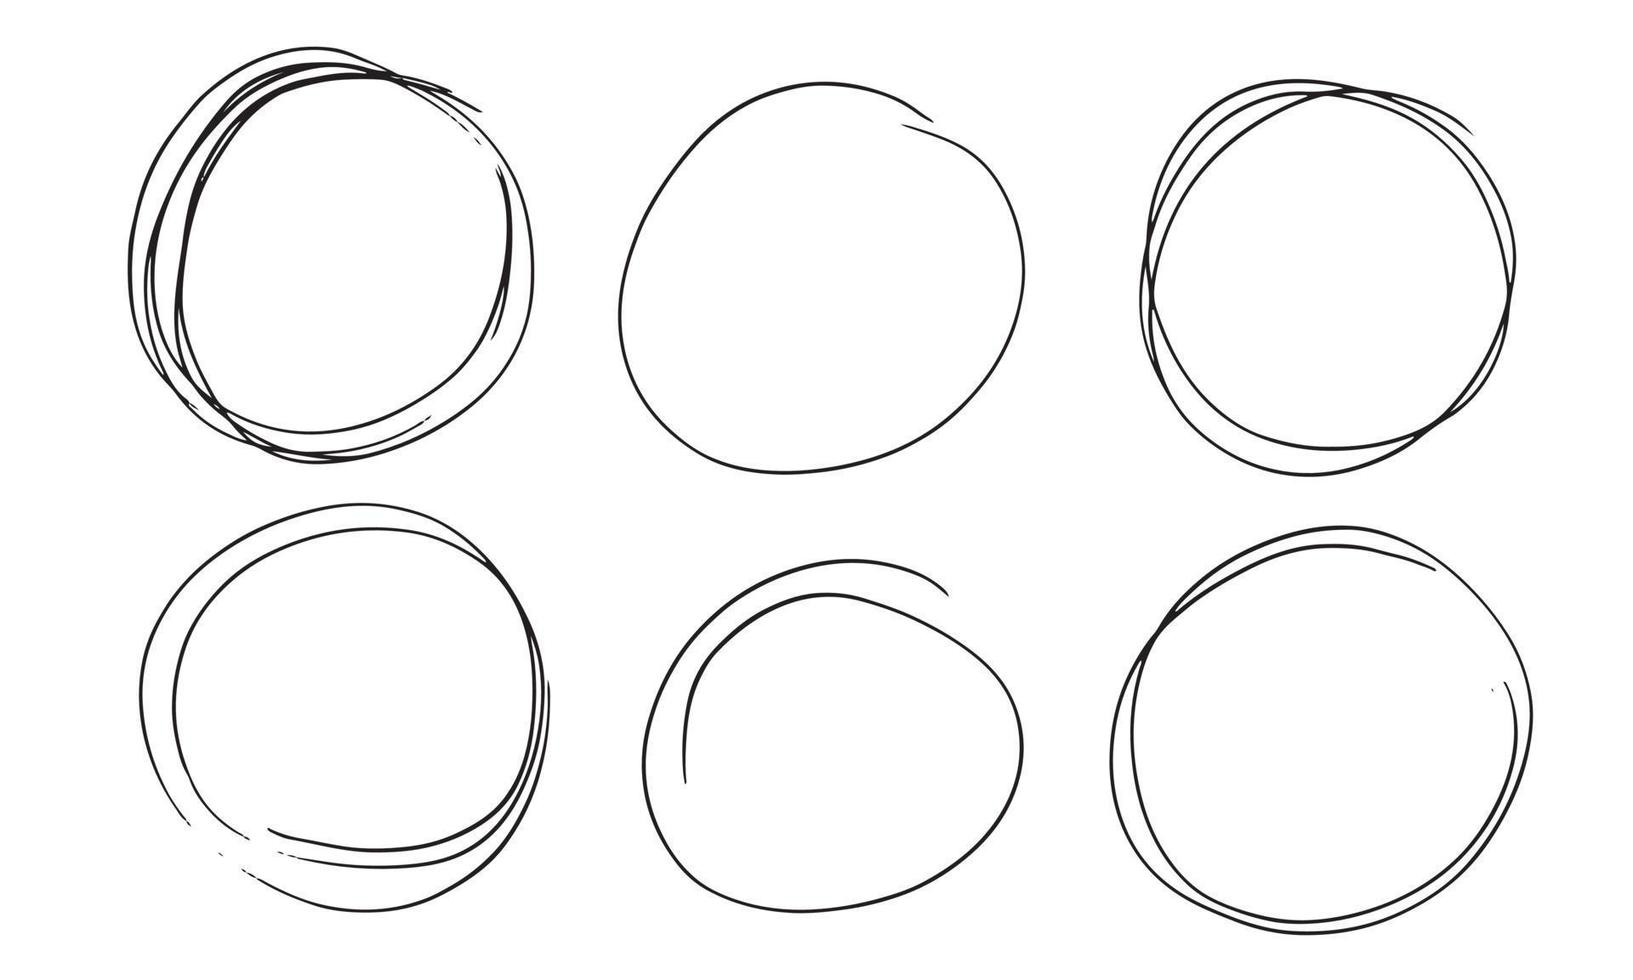 conjunto de esboço de contorno de círculo desenhado à mão. círculo de vetor de rabisco circular redondo para elemento de design em fundo branco.